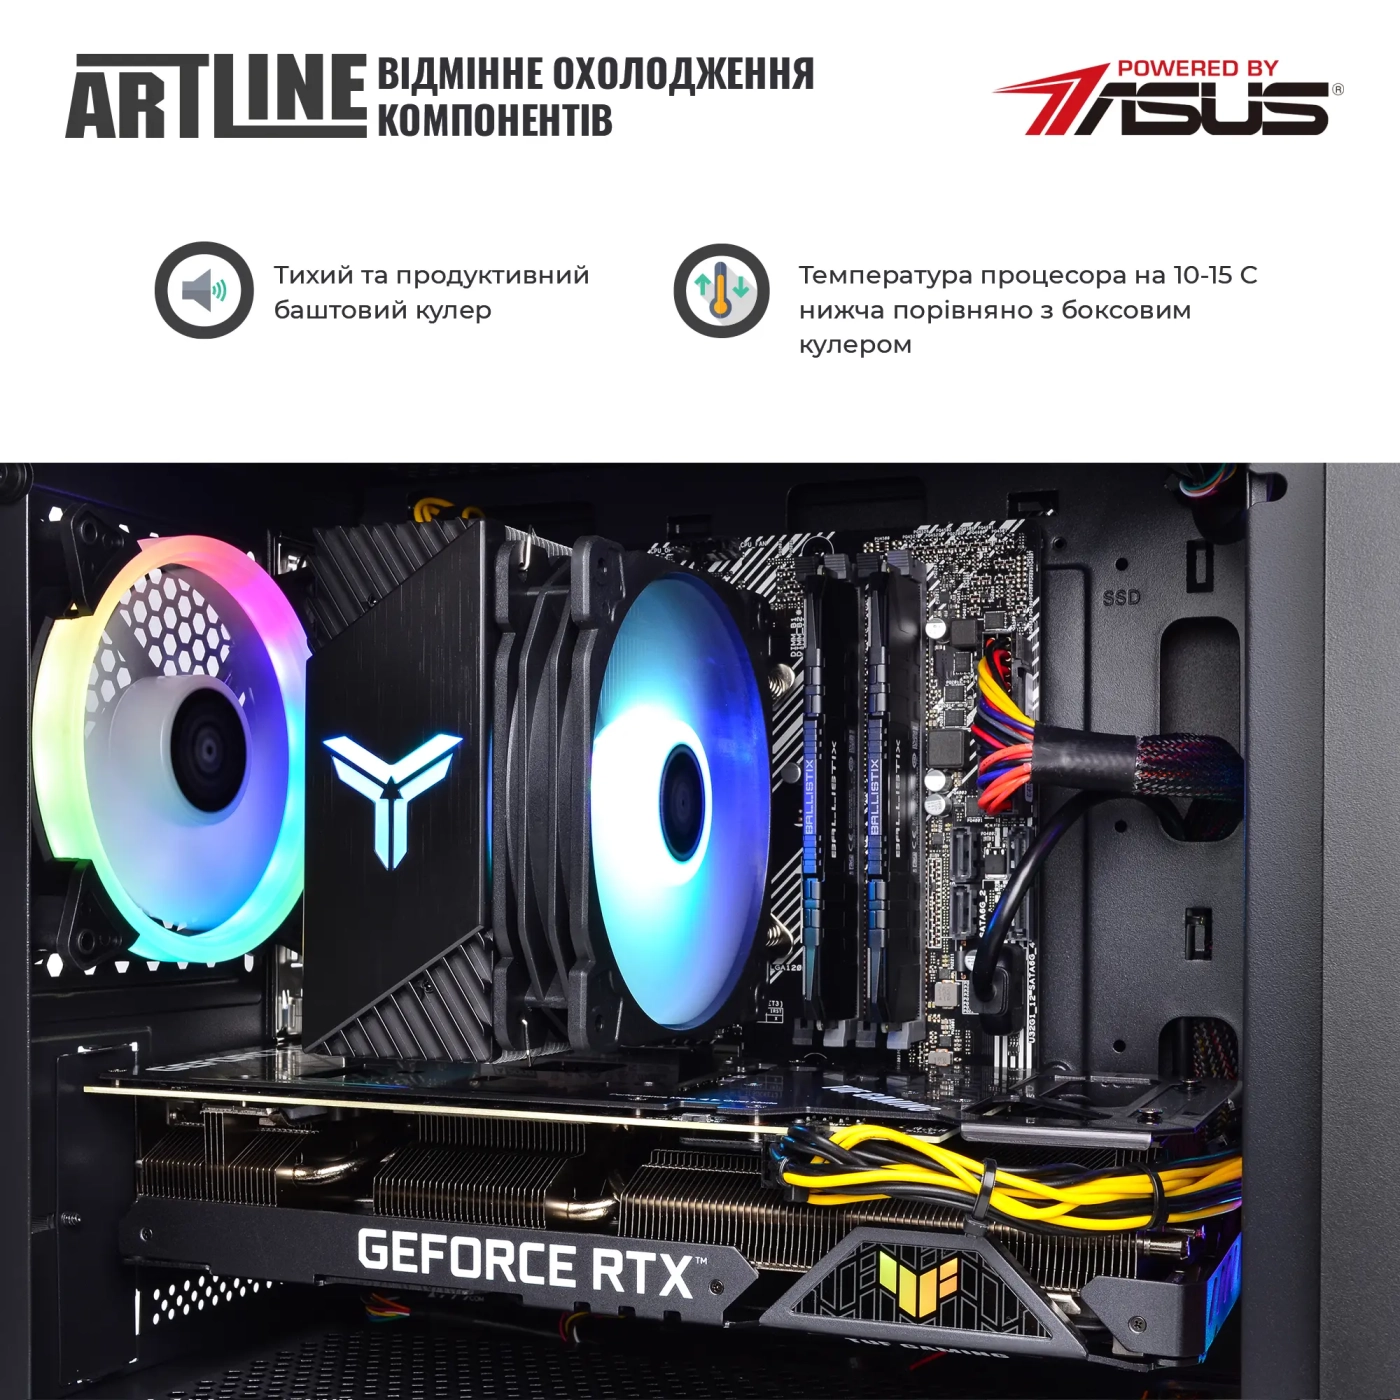 Купить Компьютер ARTLINE Gaming X57v56 - фото 5